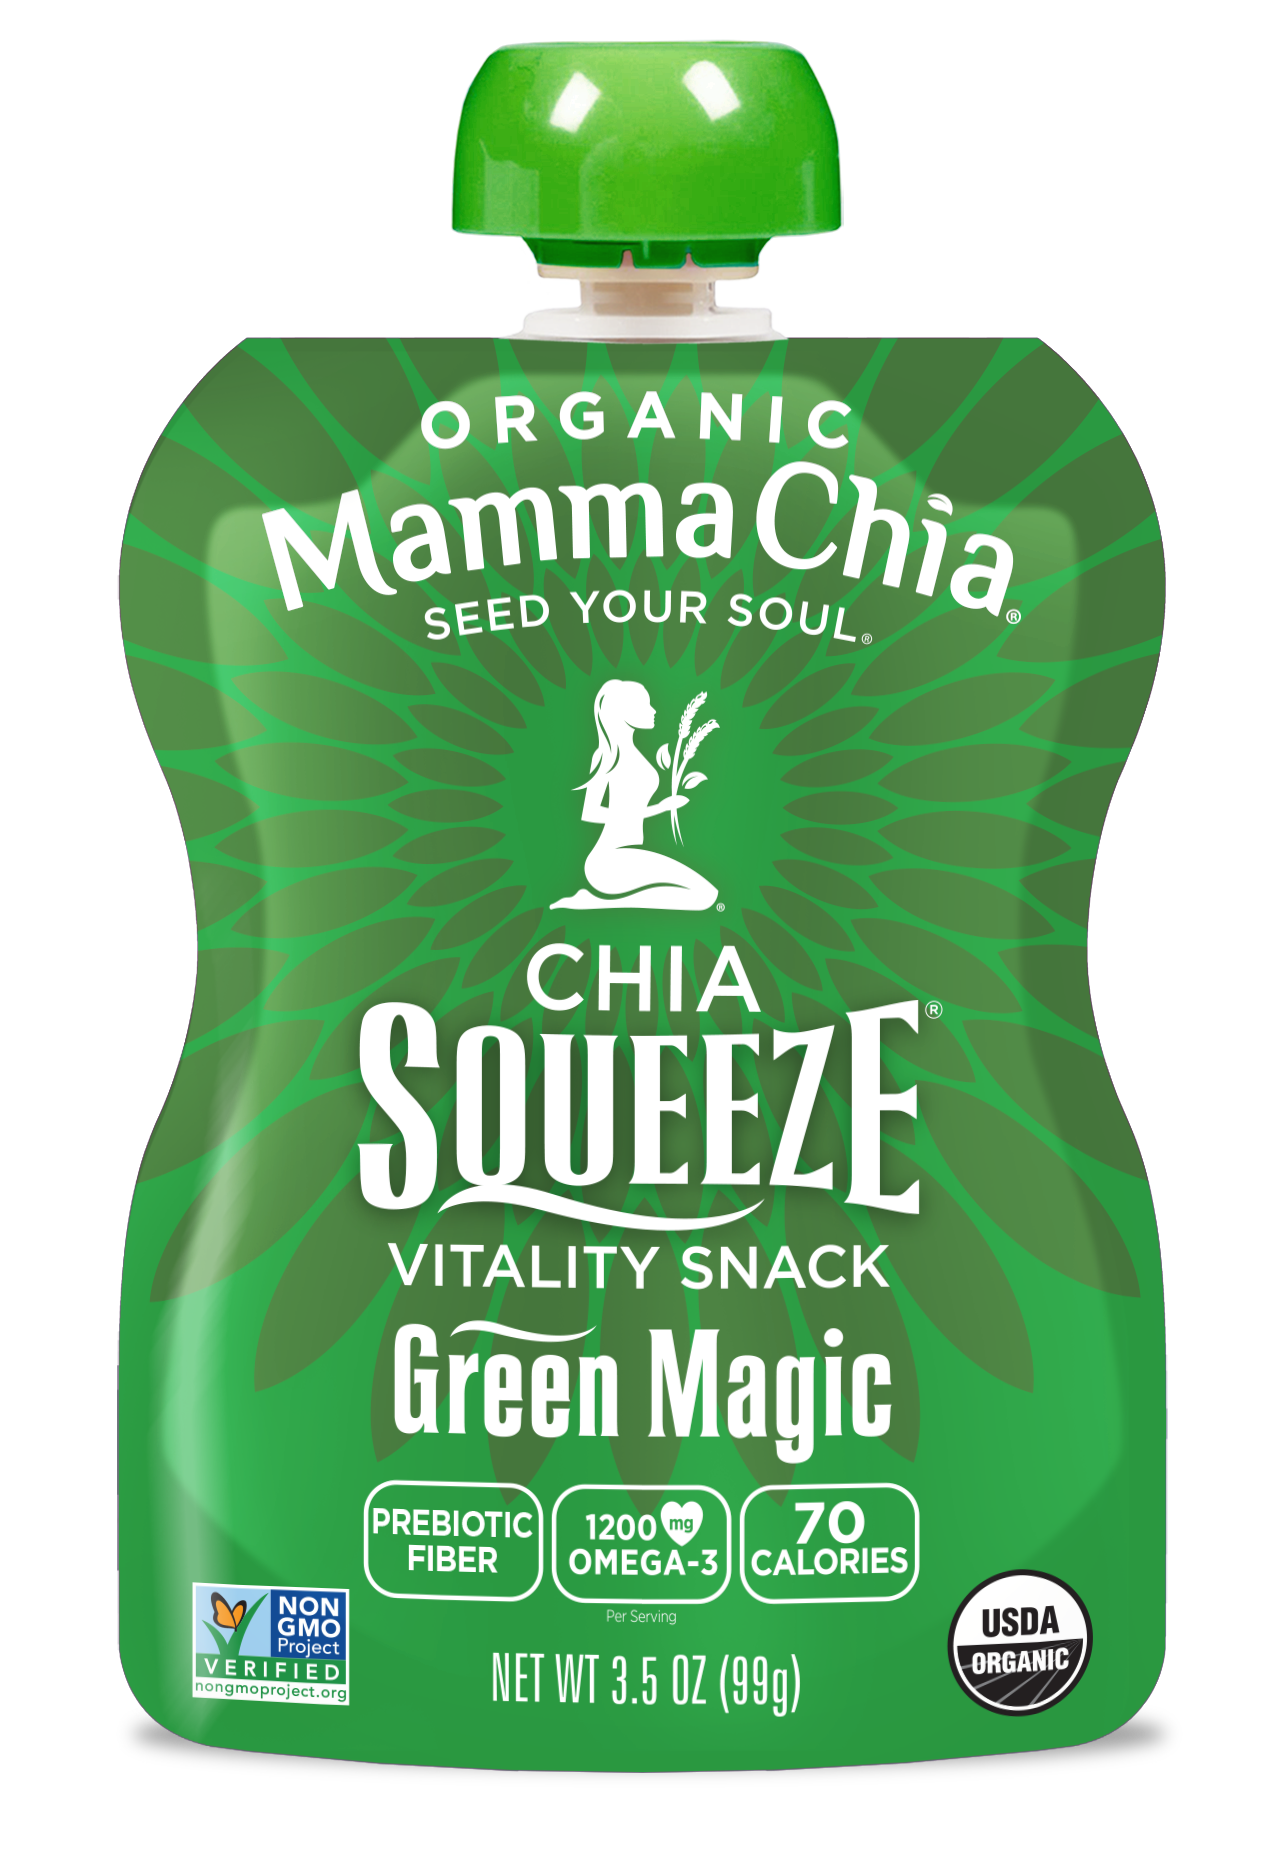 Mamma Chia Green Magic Organic Chia Squeeze 2 innerpacks per case 28.0 oz